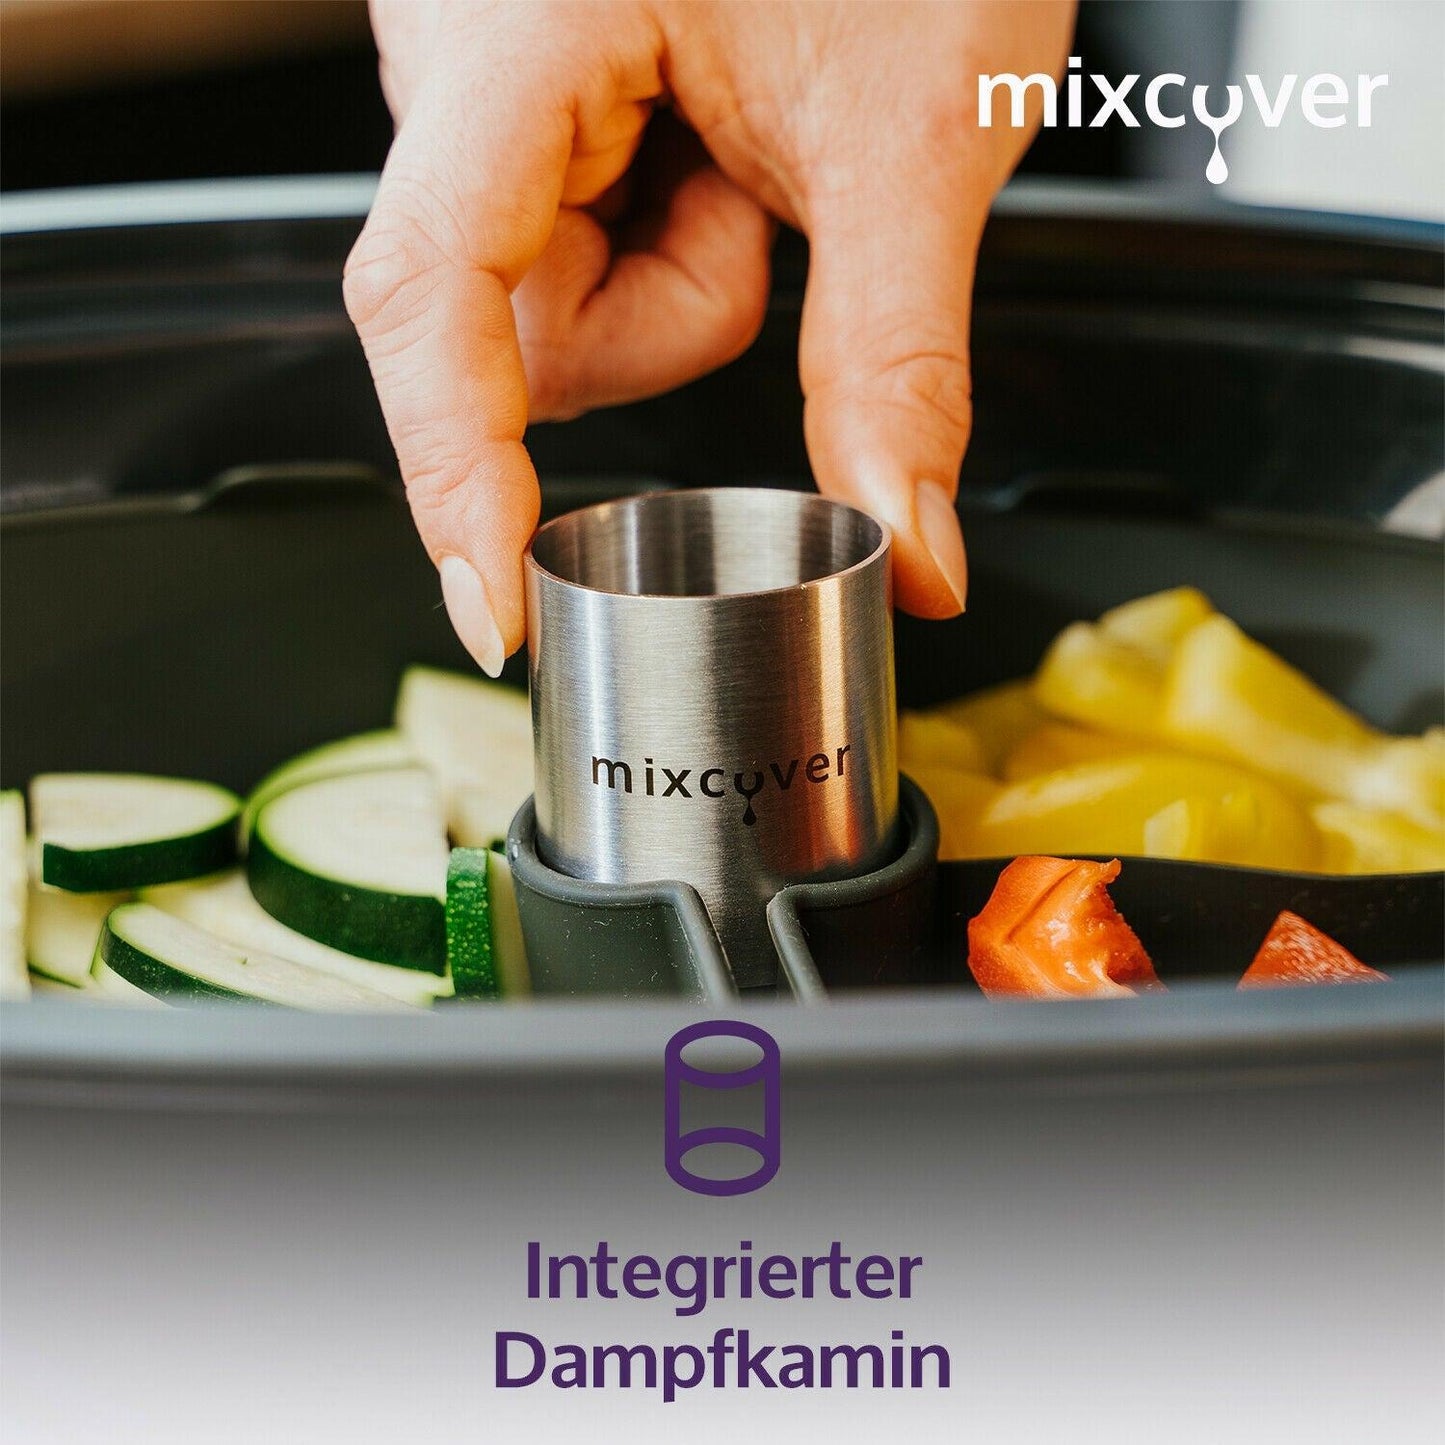 mixcover Garraumteiler (VIERTEL) Monsieur Cuisine Connect & Smart Dampfgarraum - Mixcover - Mixcover